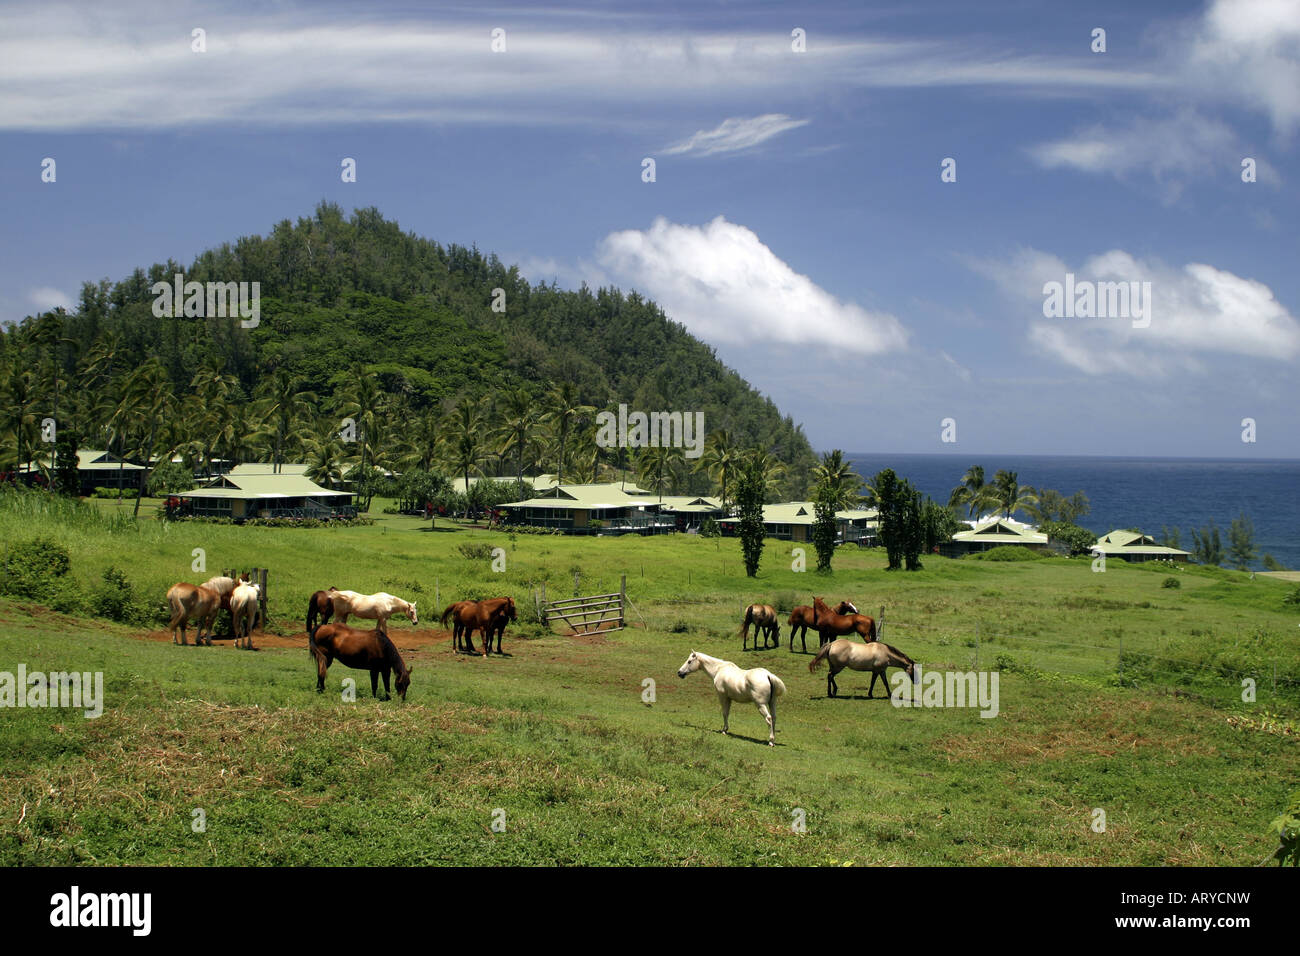 Les chevaux paissent dans un pâturage ouvert en face de l'hôtel Hana-Maui's Sea Ranch Cottages situé le long de la Baie d'Kaihalulu, pierres Banque D'Images